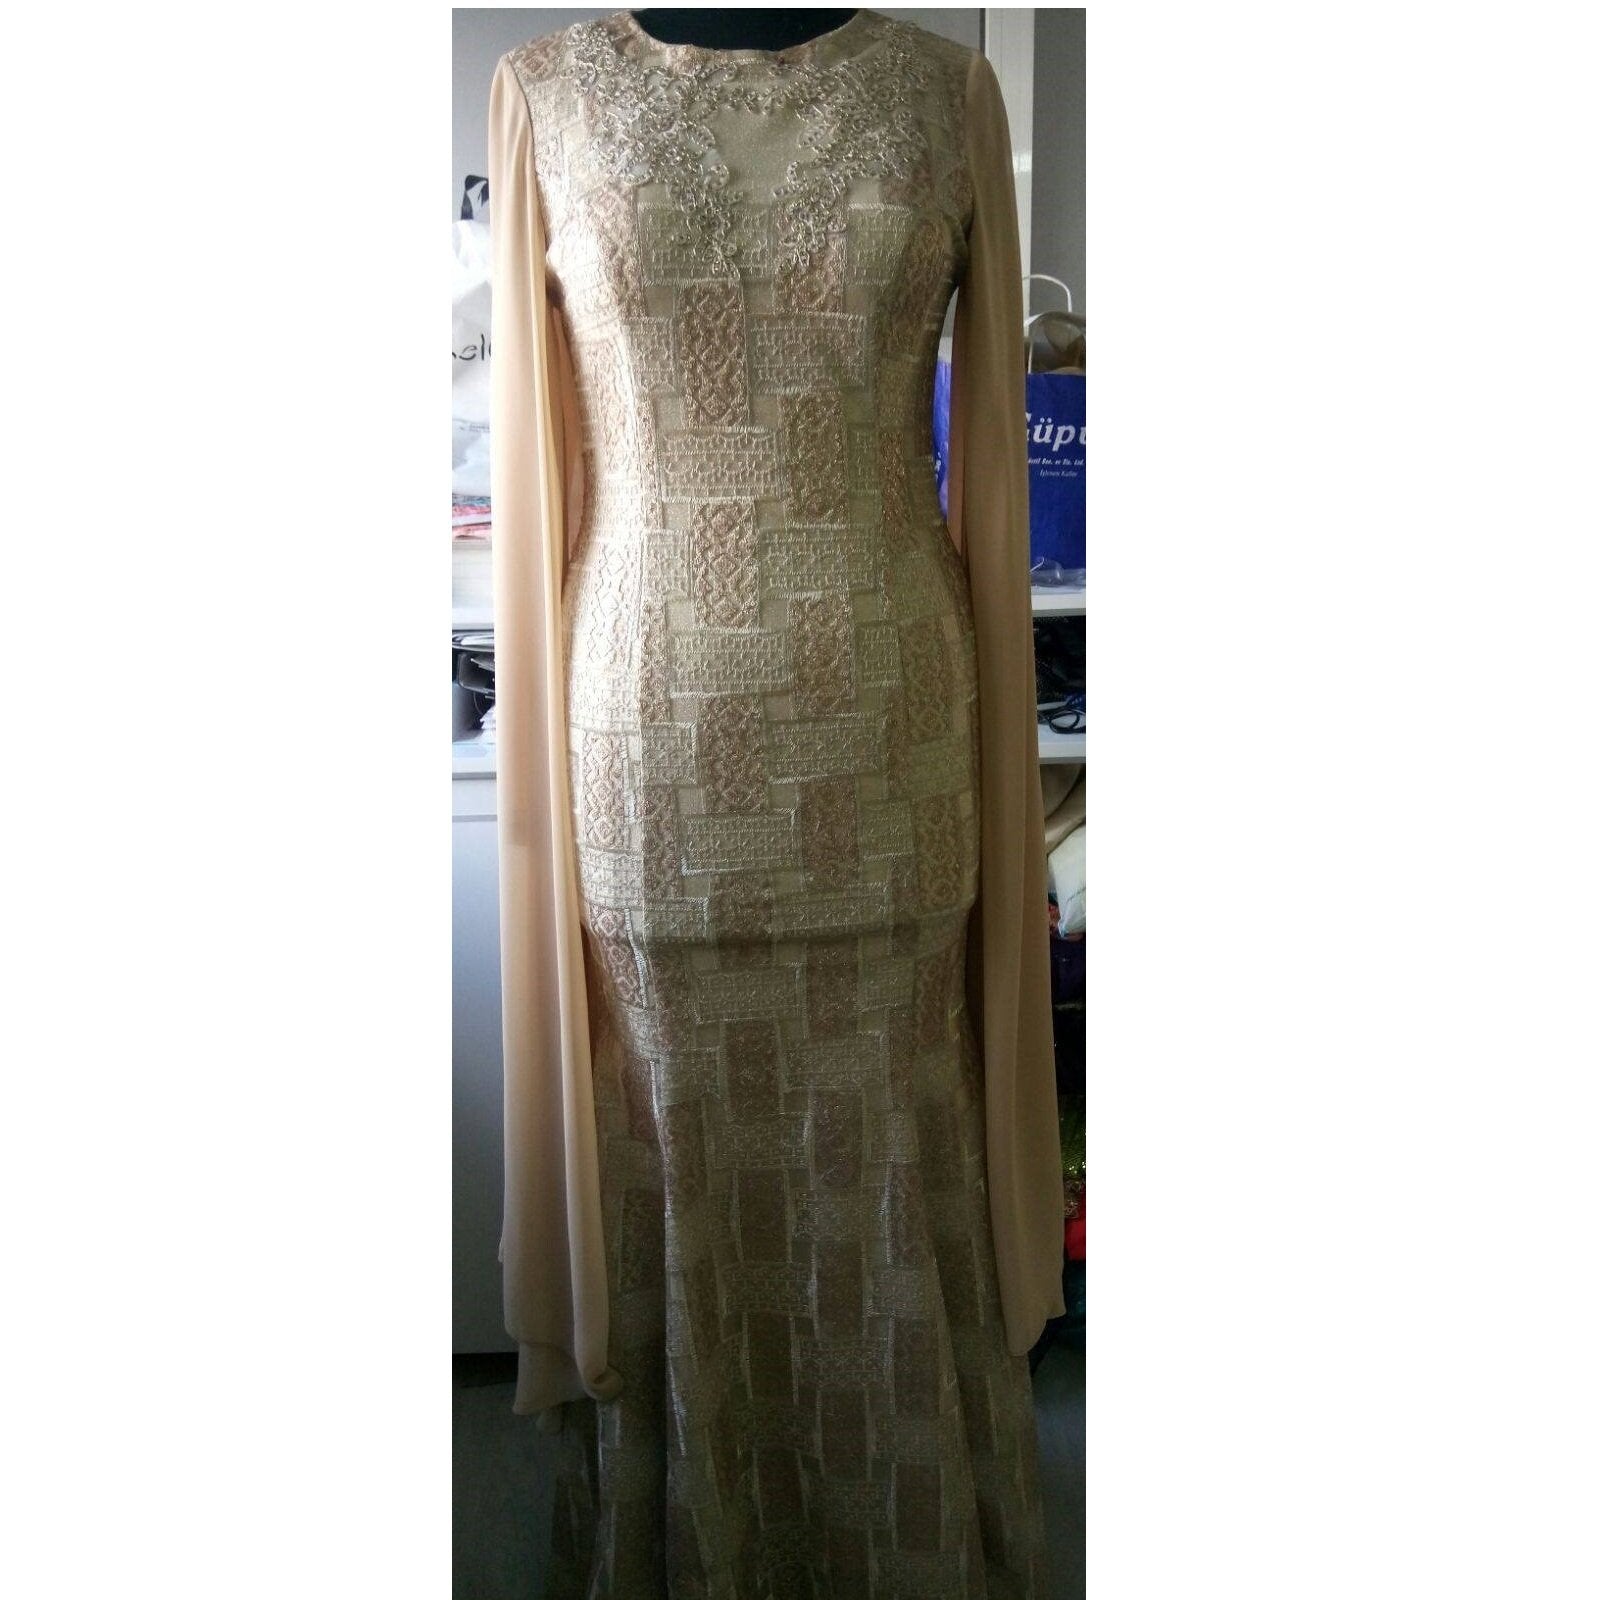 Geleneksel Tarzda Parlak Altın Payet İşlemeli Elbise | Burç Kumaş